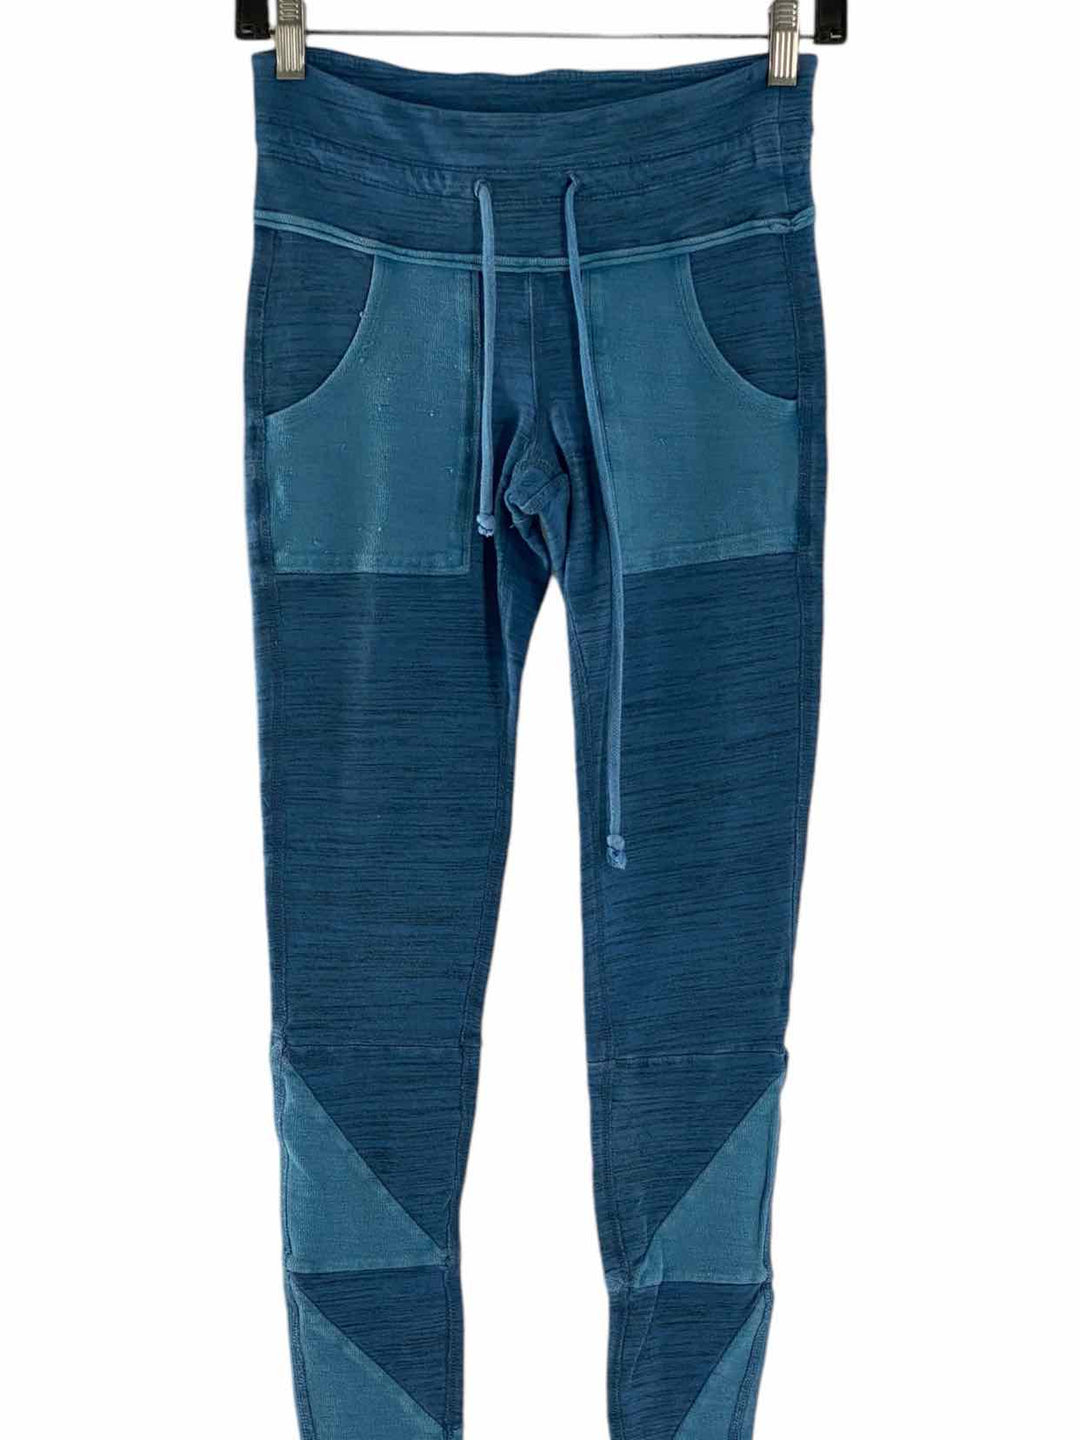 FP Movement Size XS Blue Athletic Pants